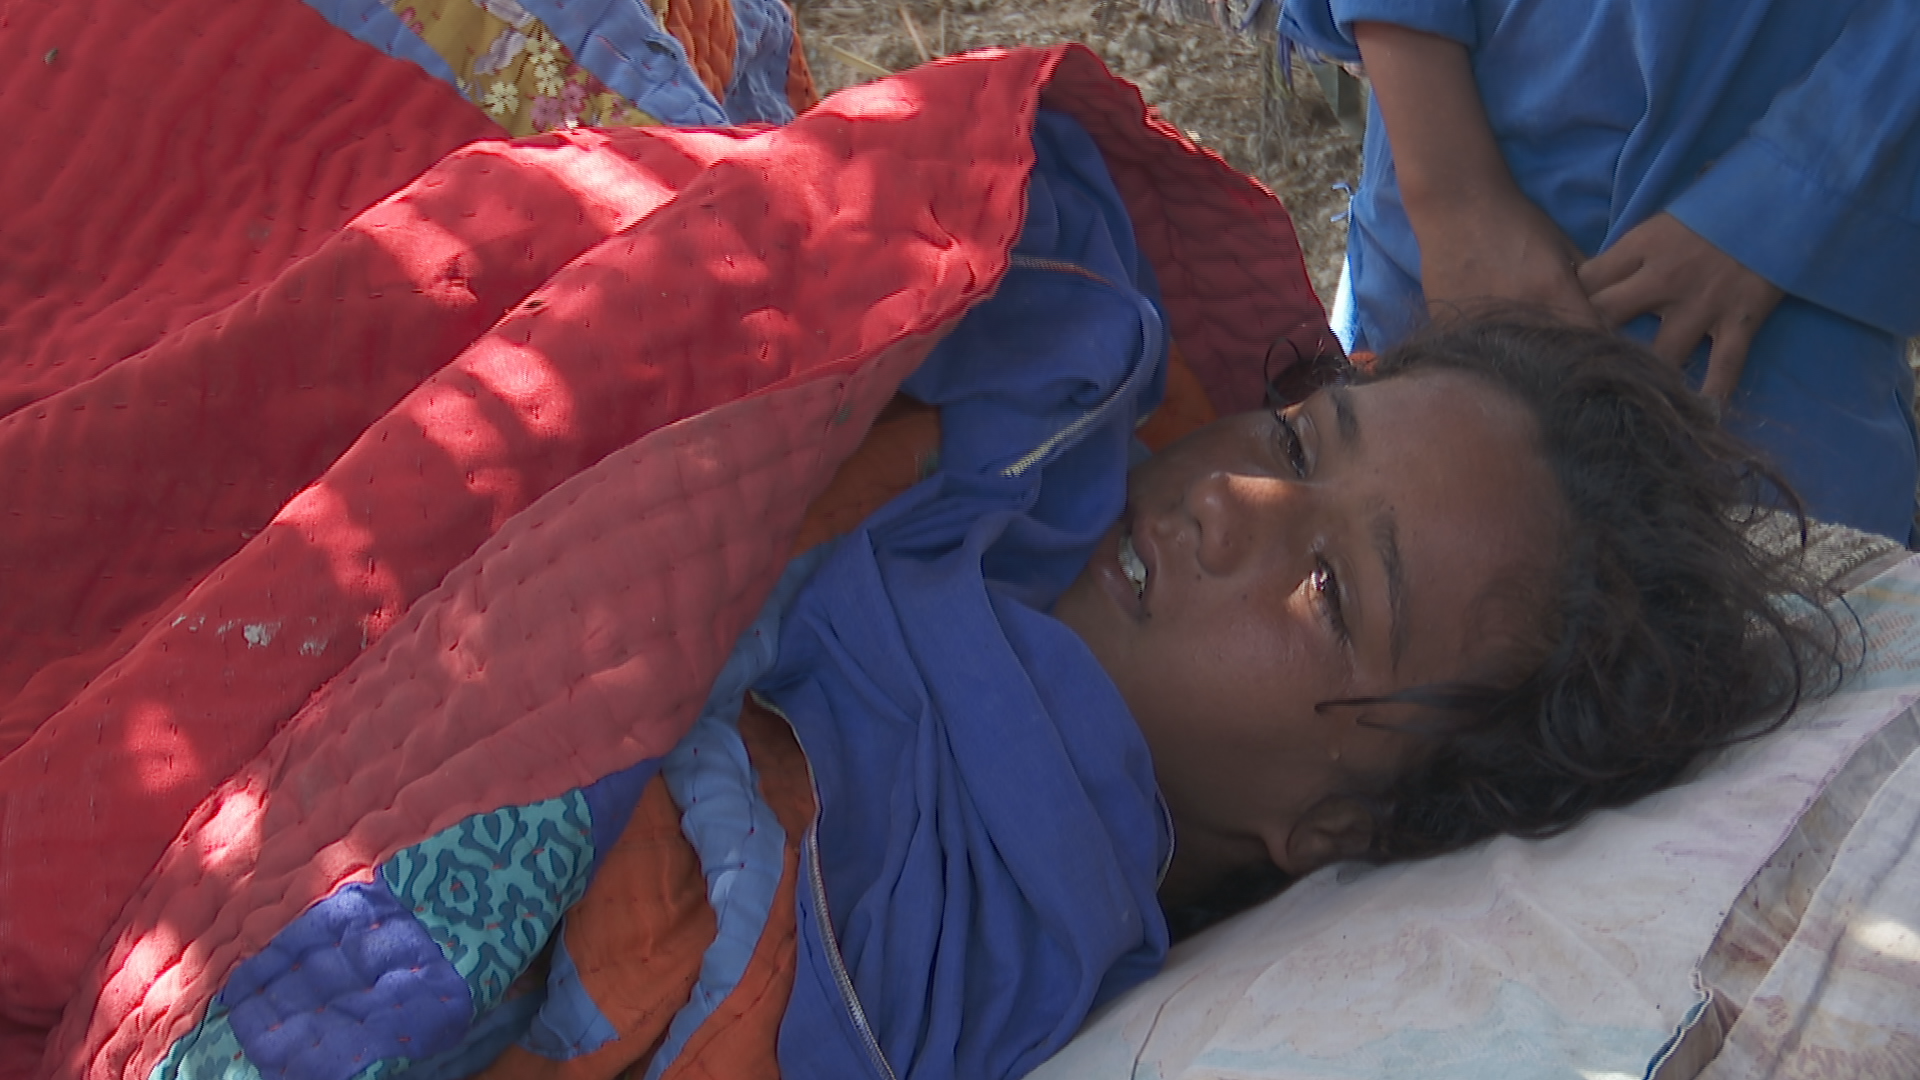 말라리아에 걸렸지만, 교통비가 없어 병원에 가지 못하고 감기약으로 버티고 있는 아이